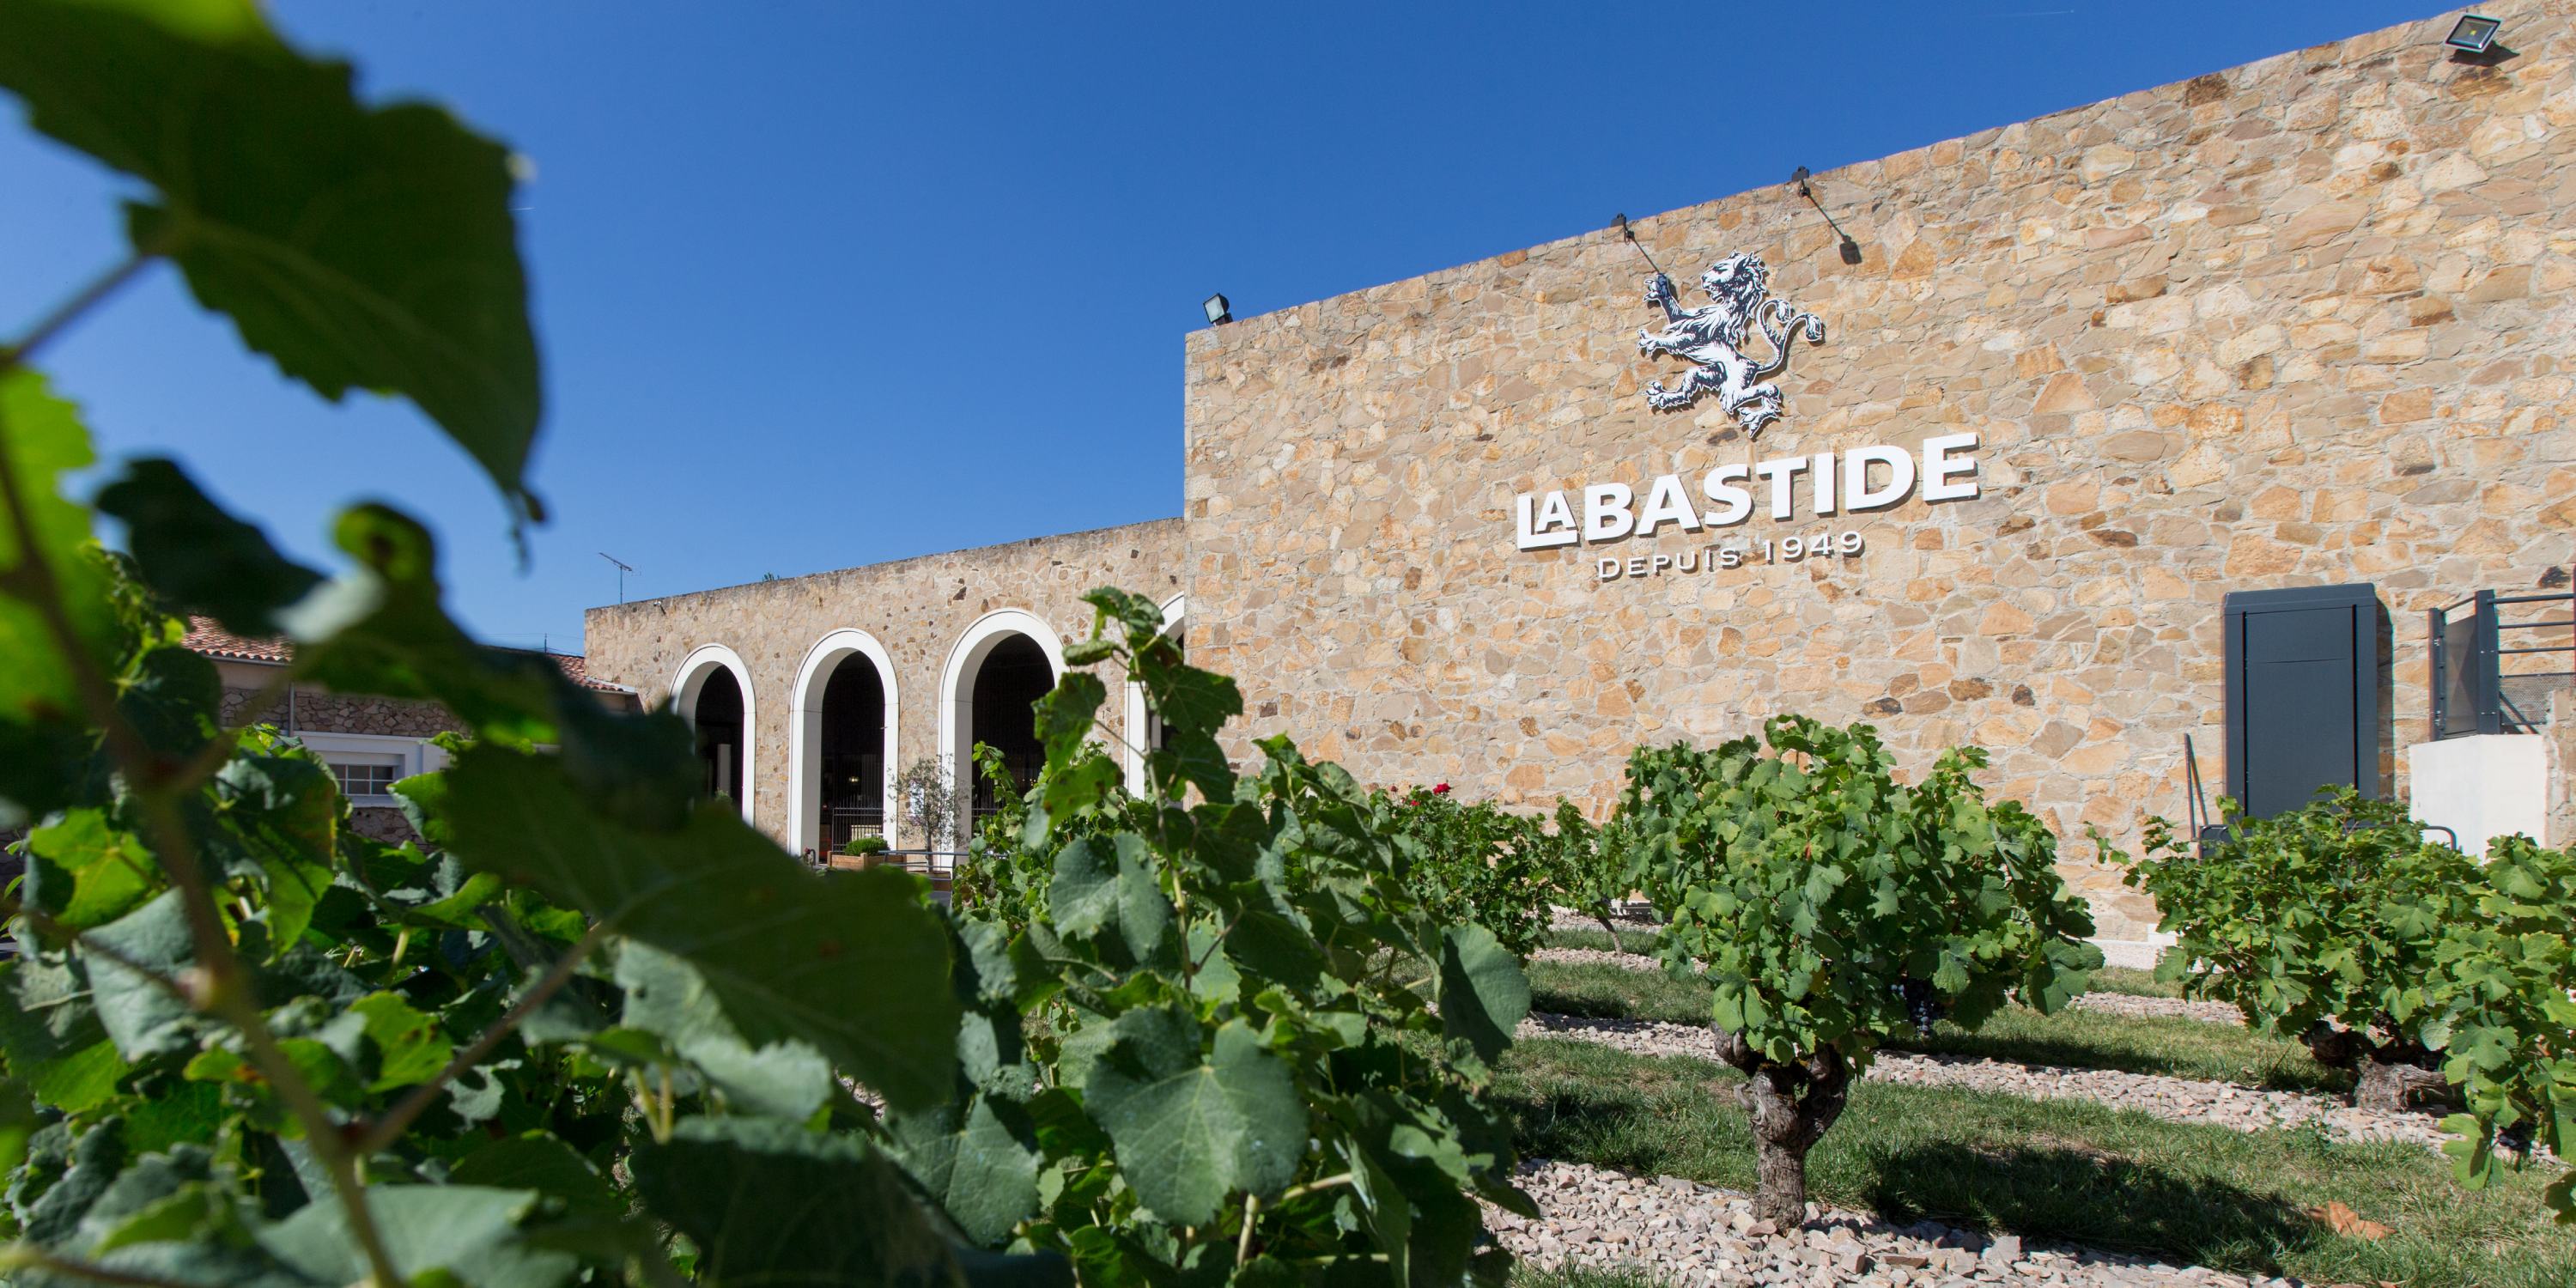 Maison Labastide : maison de vins historique et pleine d’entrain !